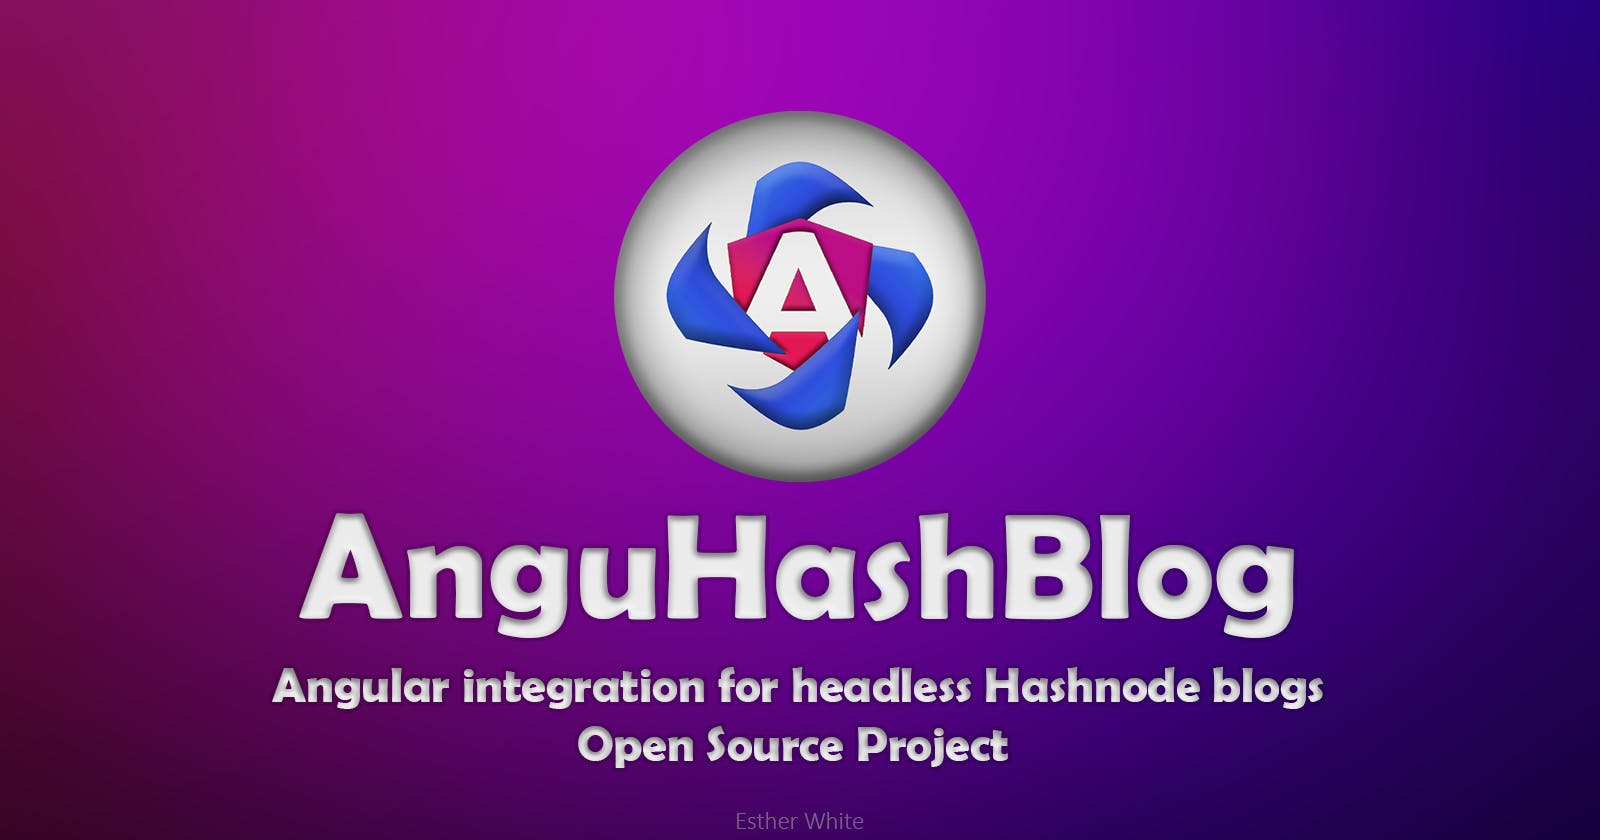 AnguHashBlog: Name Unveiling and Migration to GitHub Organization